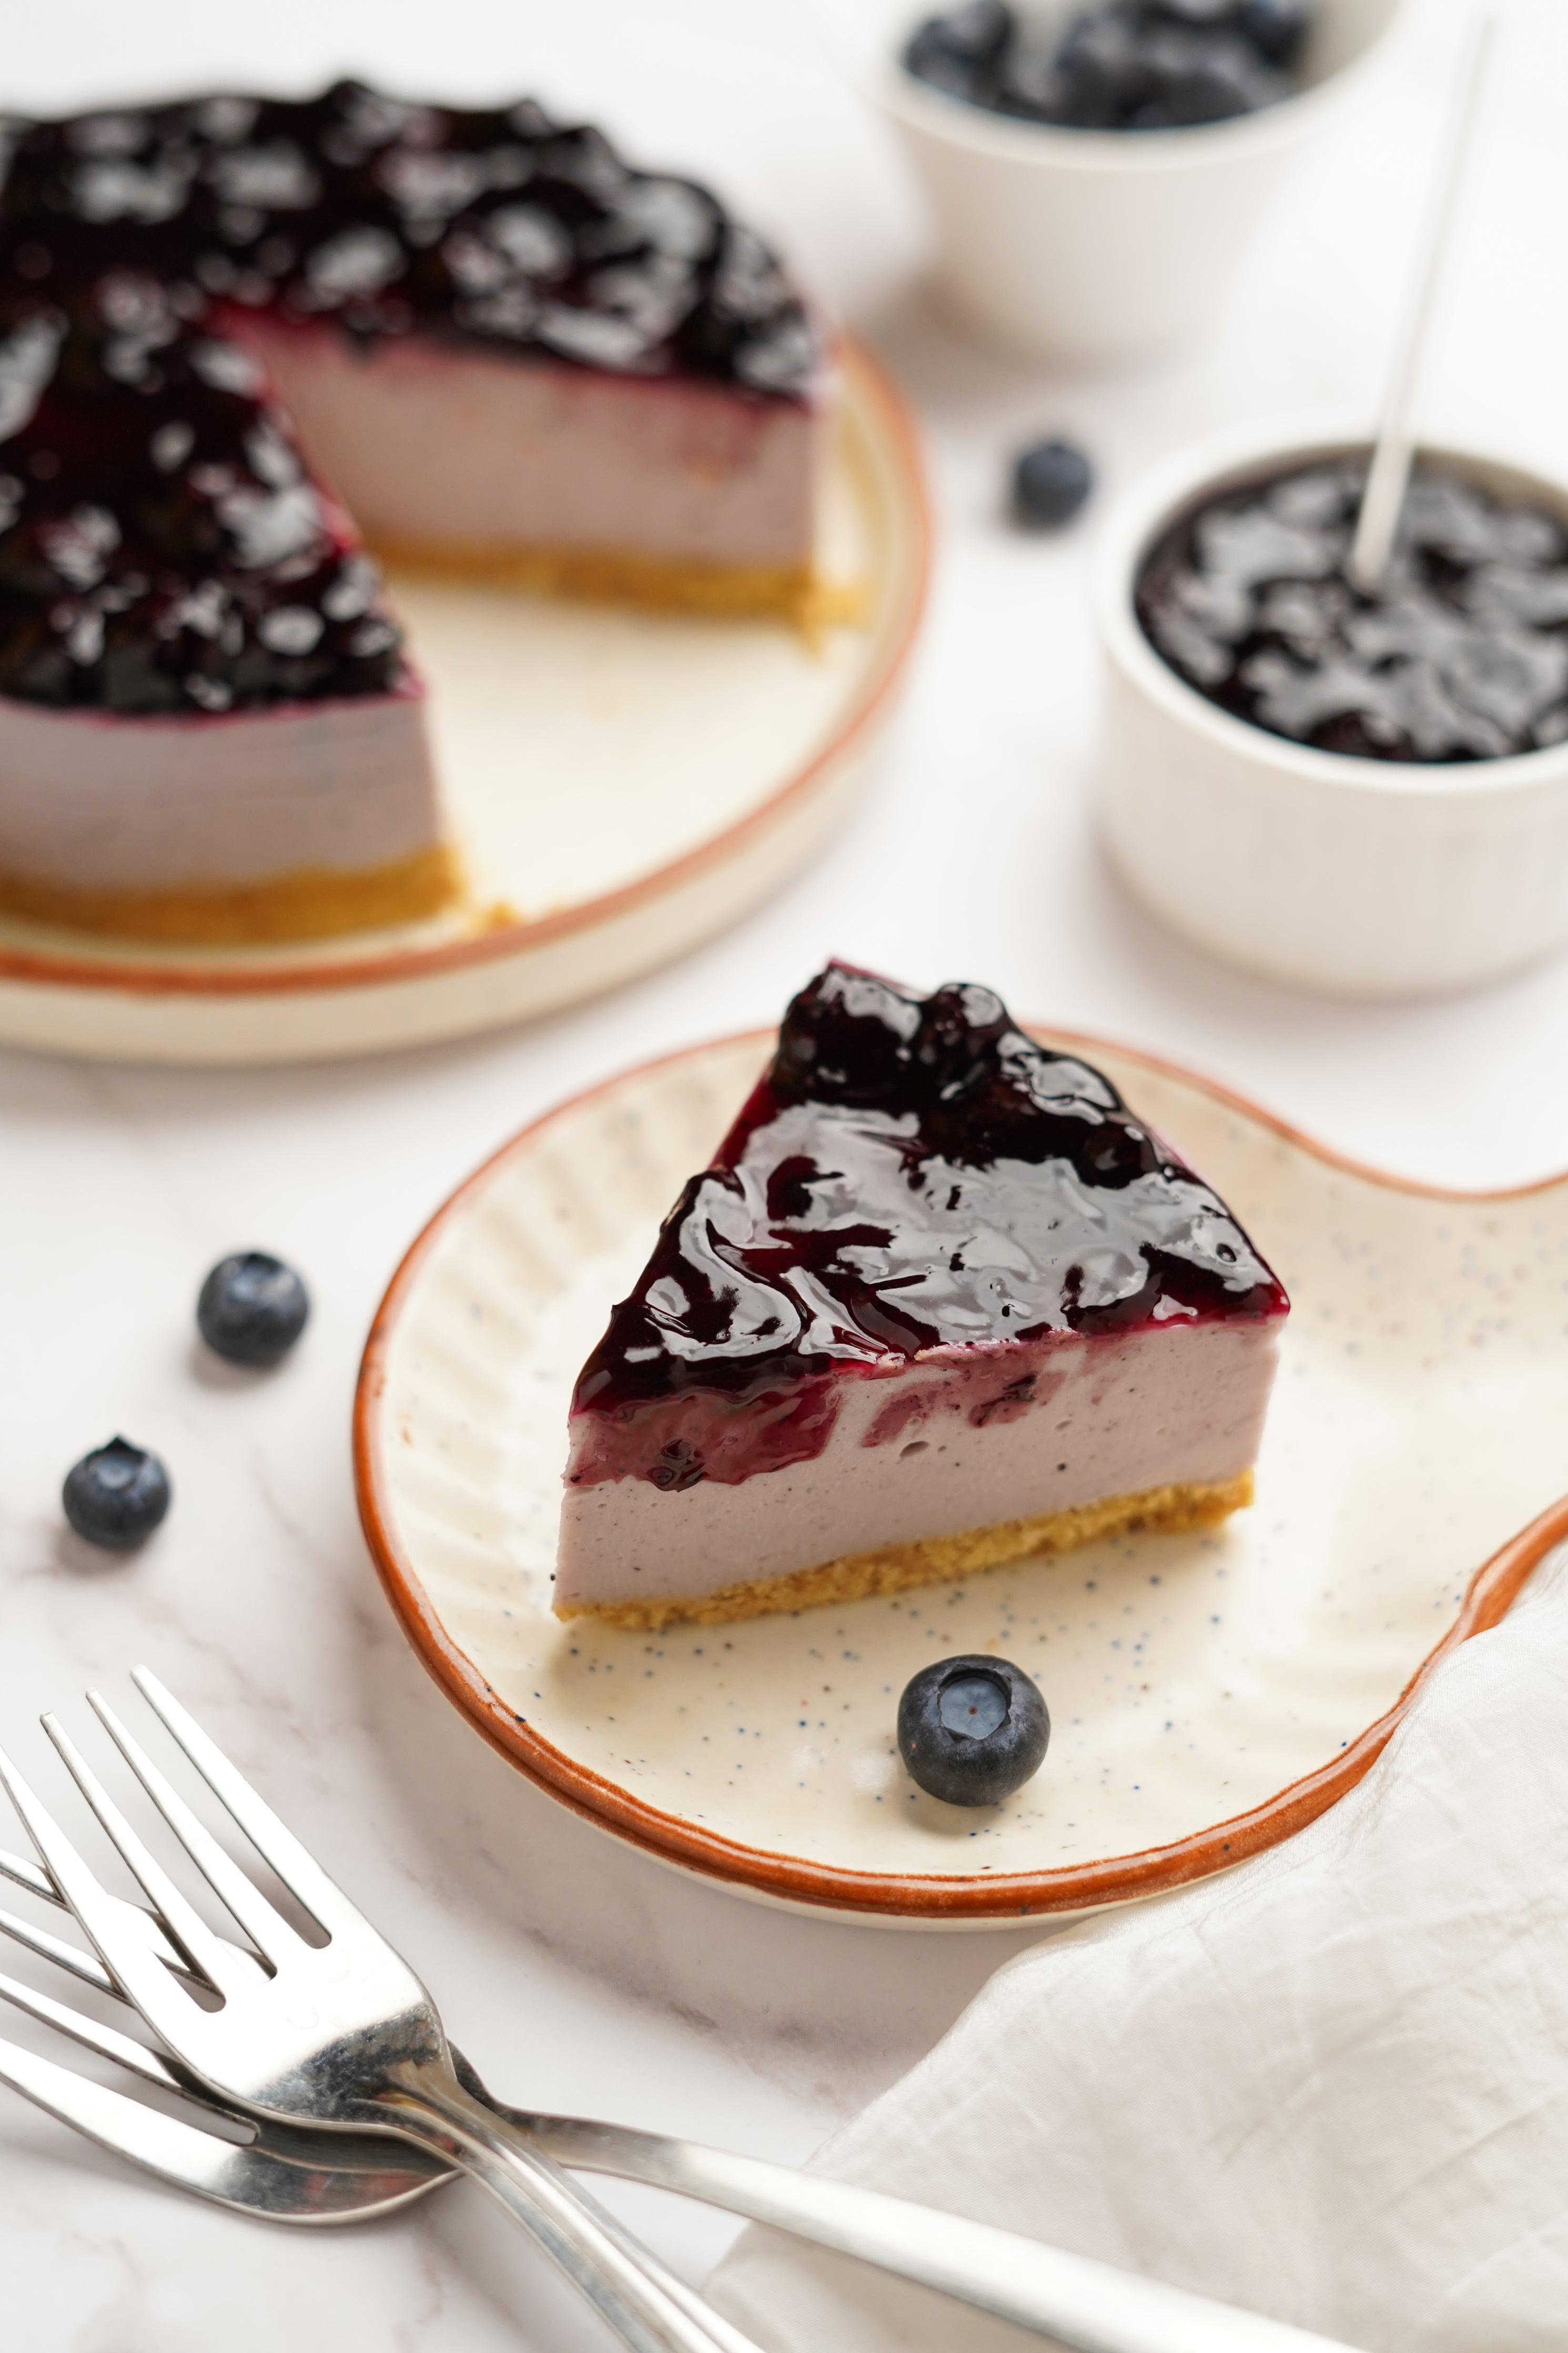 Amazing Blueberry Cheesecake Recipe - YouTube